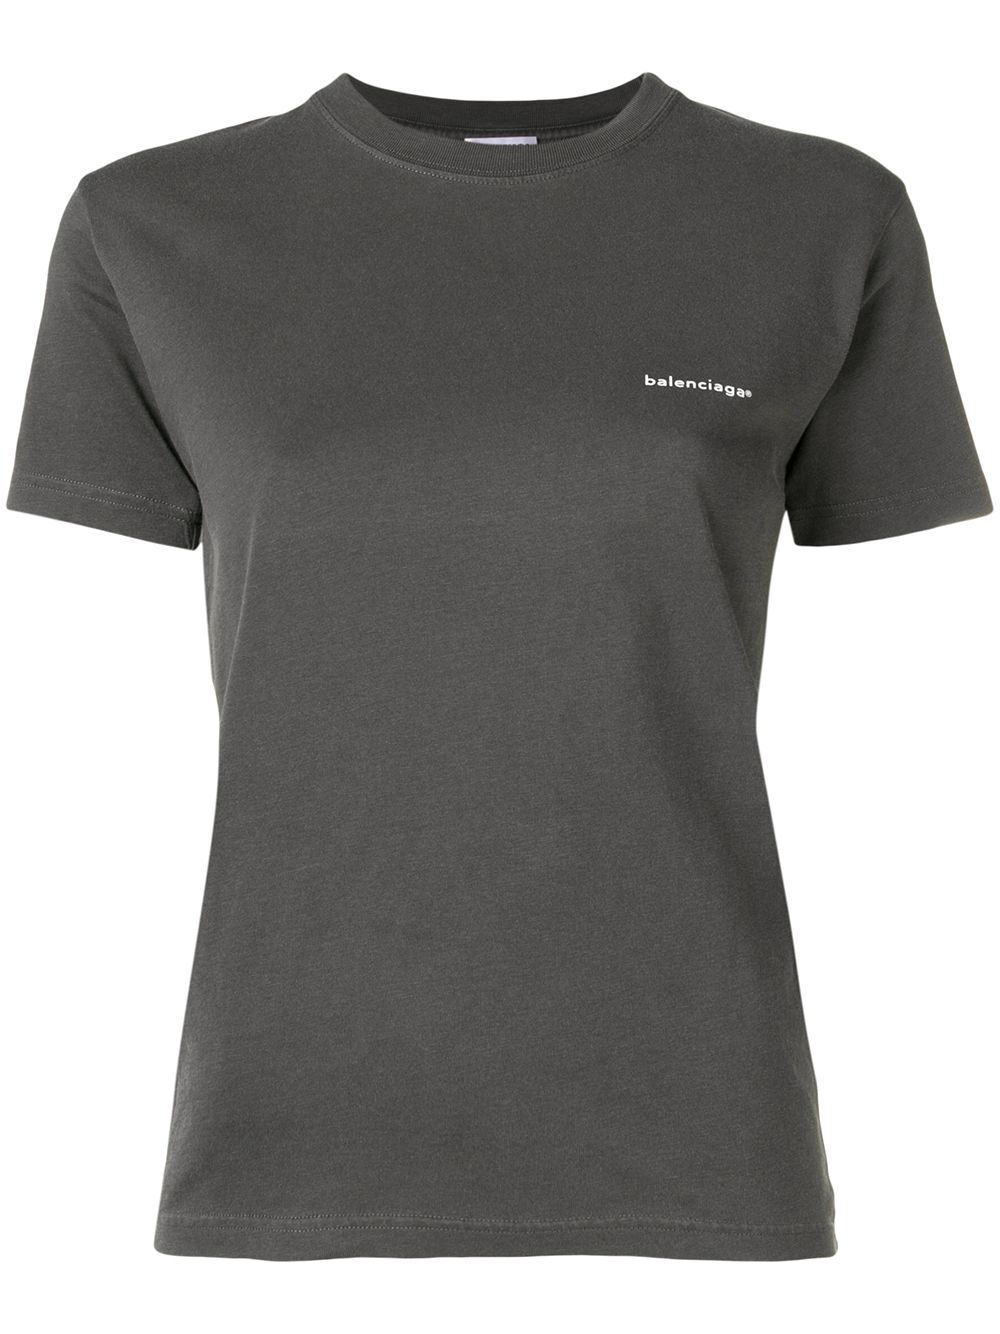 Unisex Crew Neck T-Shirt Grey | Sarah Becks